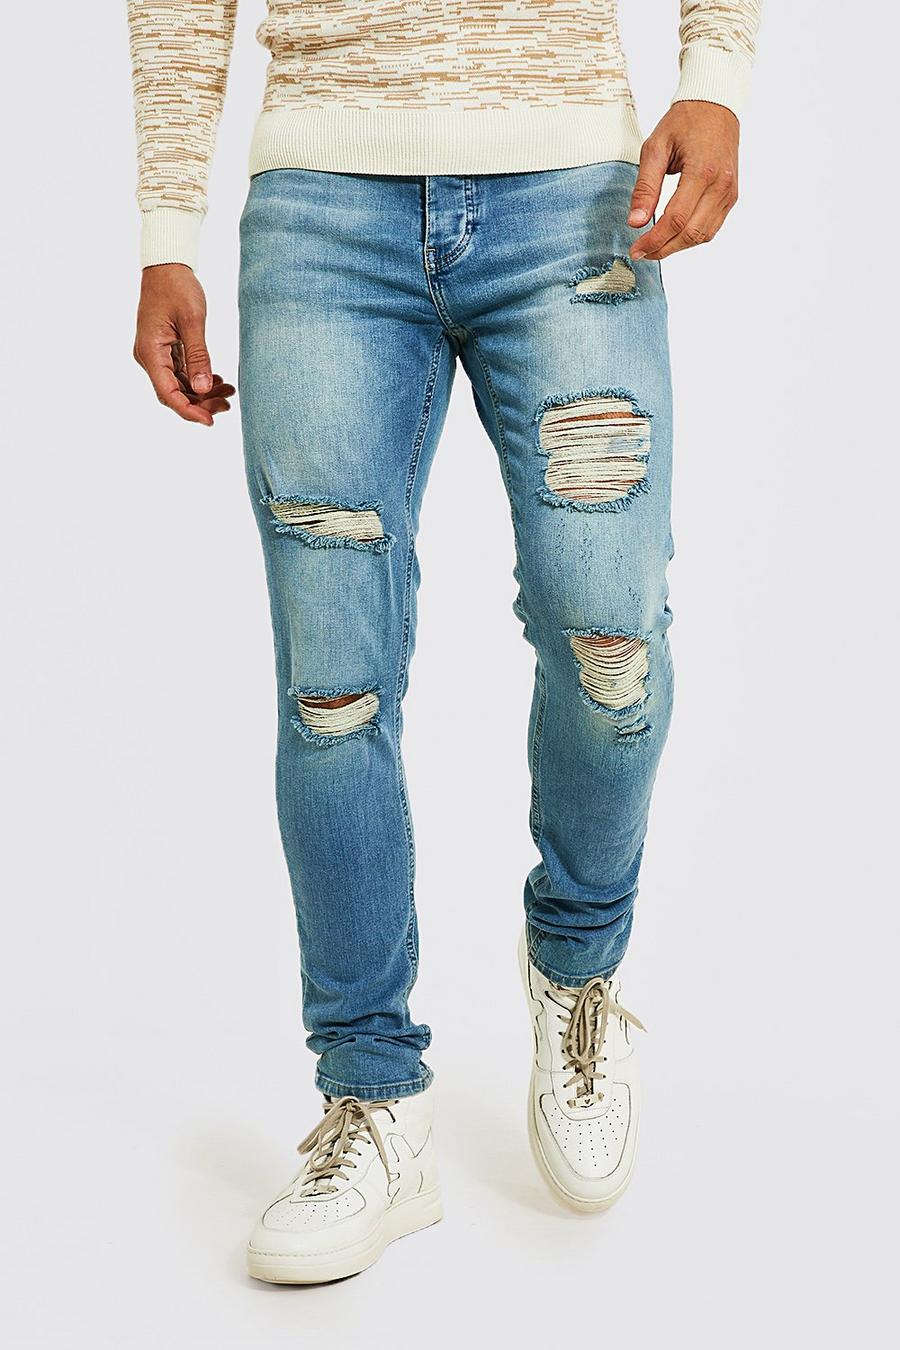 כחול וינטג' azul סקיני ג'ינס נמתחים עם קרעים מרובים